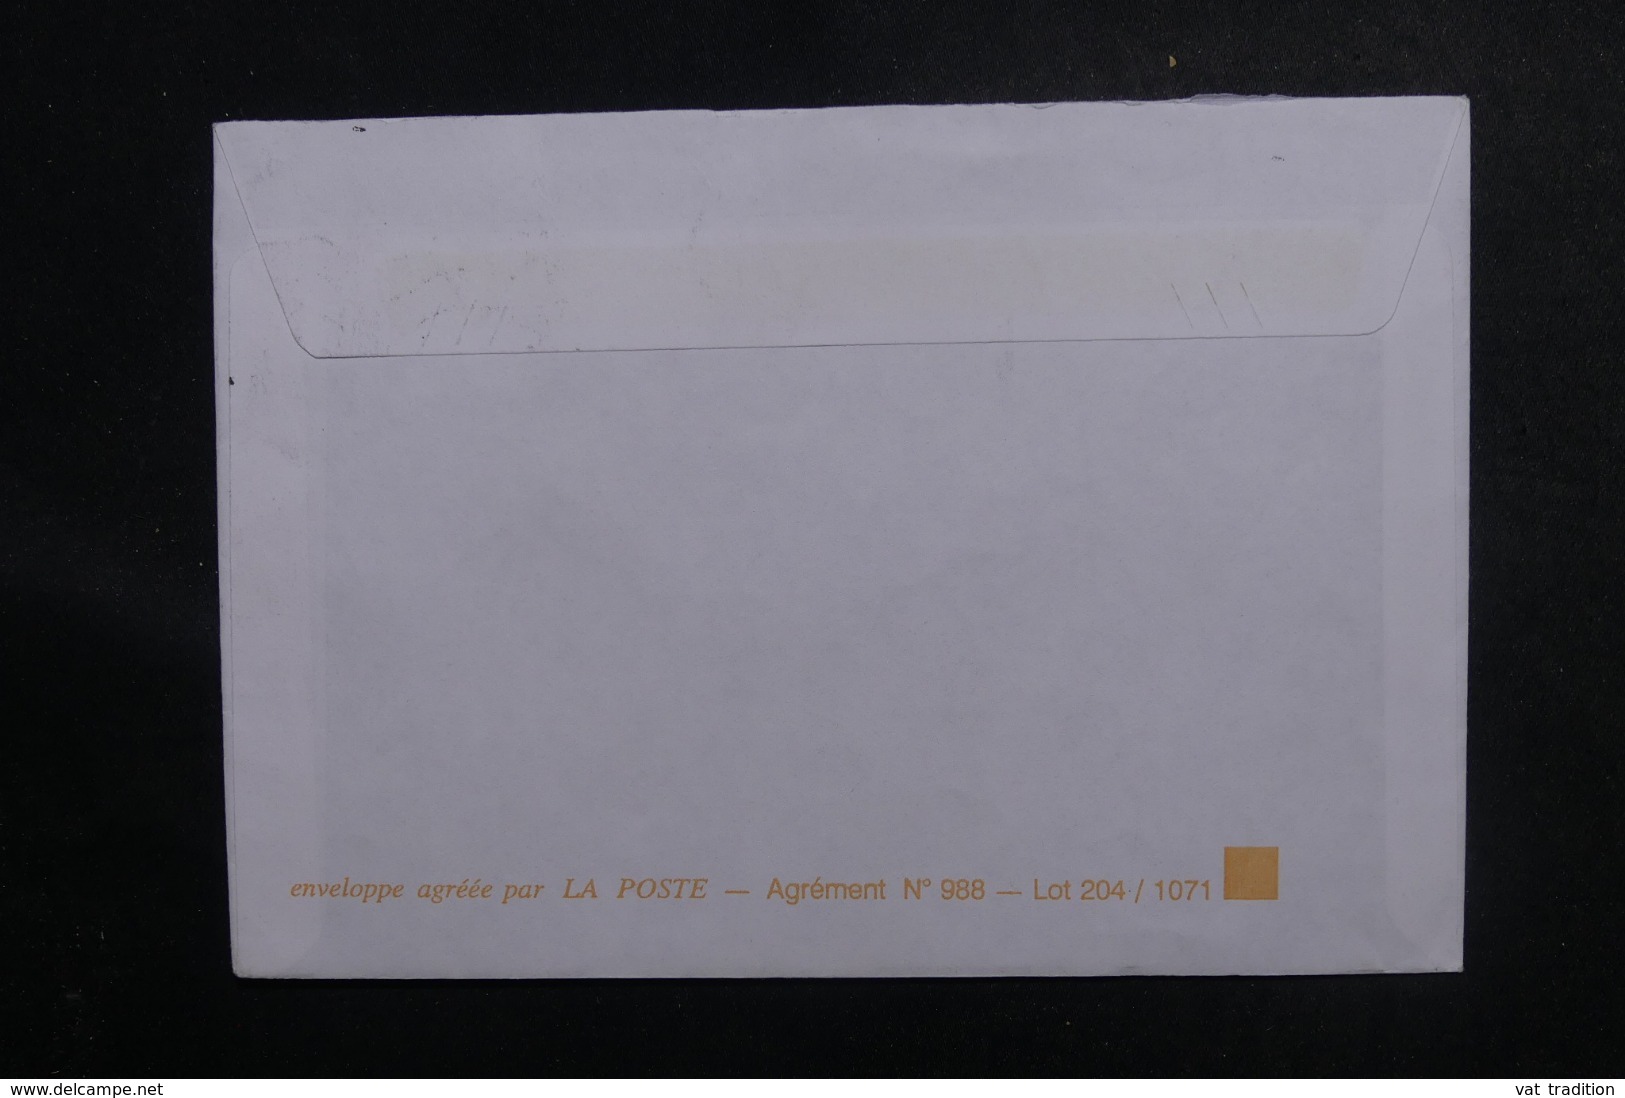 MAYOTTE - Enveloppe De Pamandzi Pour La France En 1997, Oblitération Plaisant - L 47031 - Cartas & Documentos